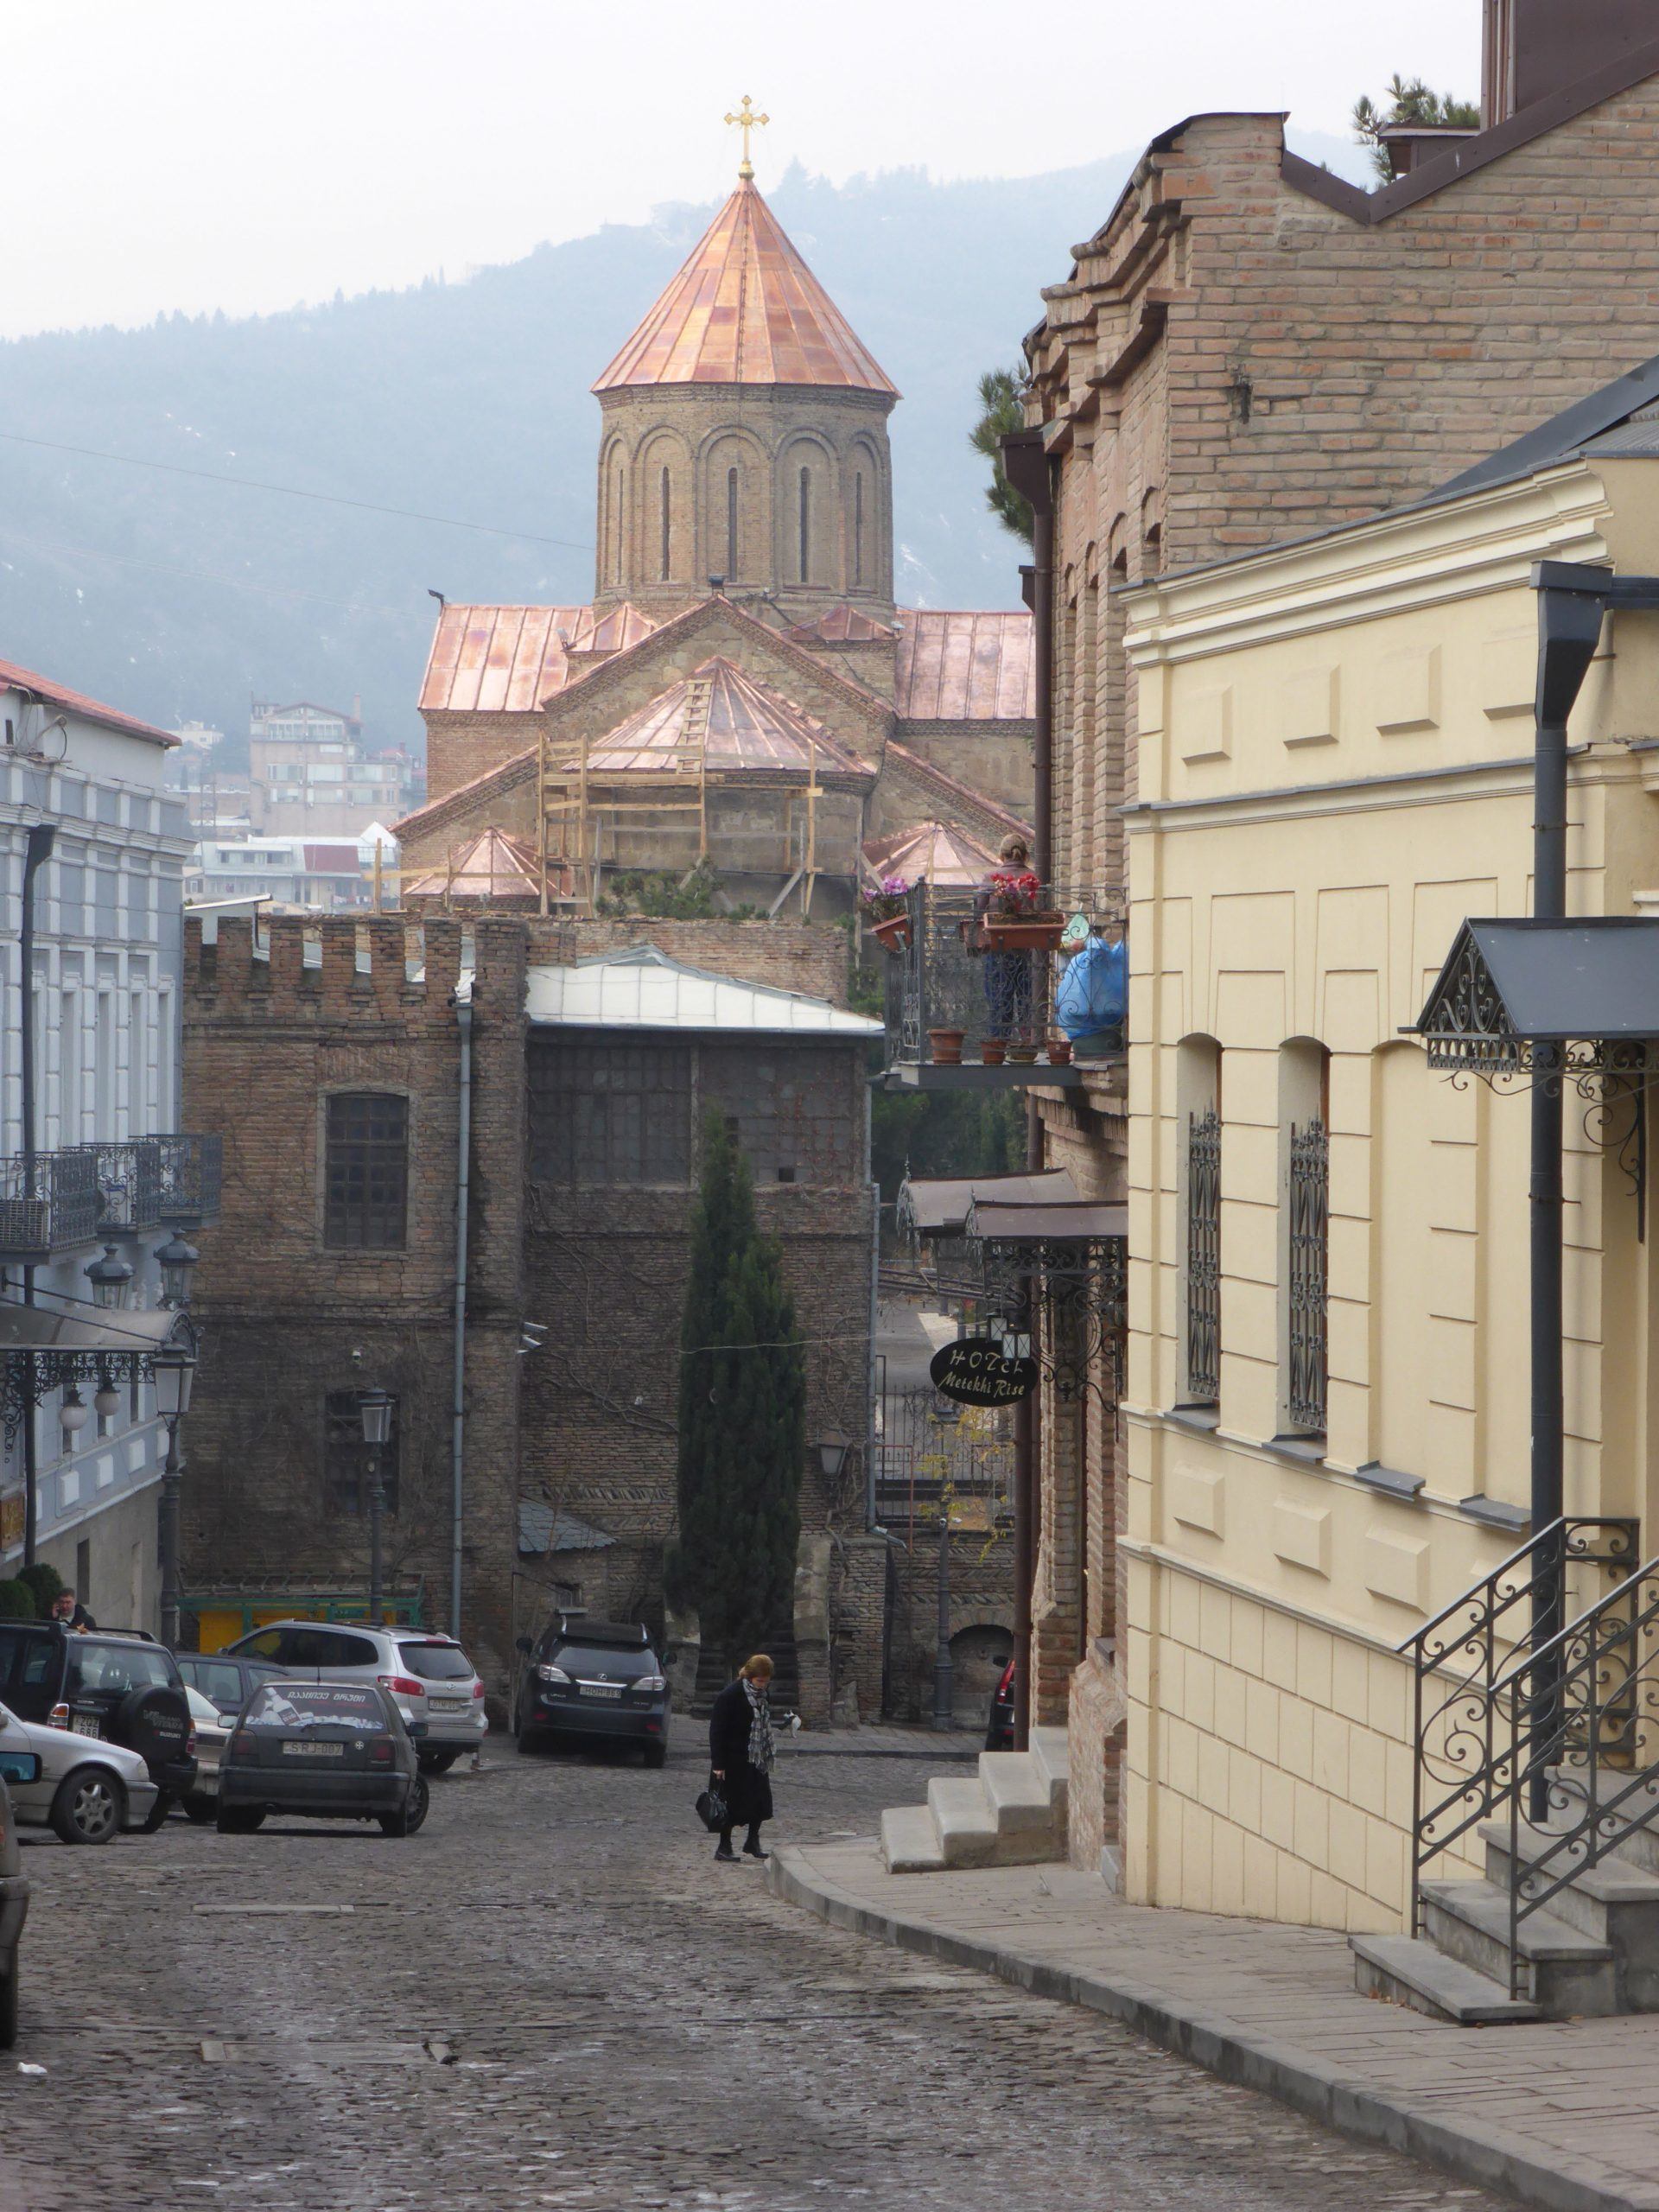 Cobblestone road in Old Town Tbilisi Georgia